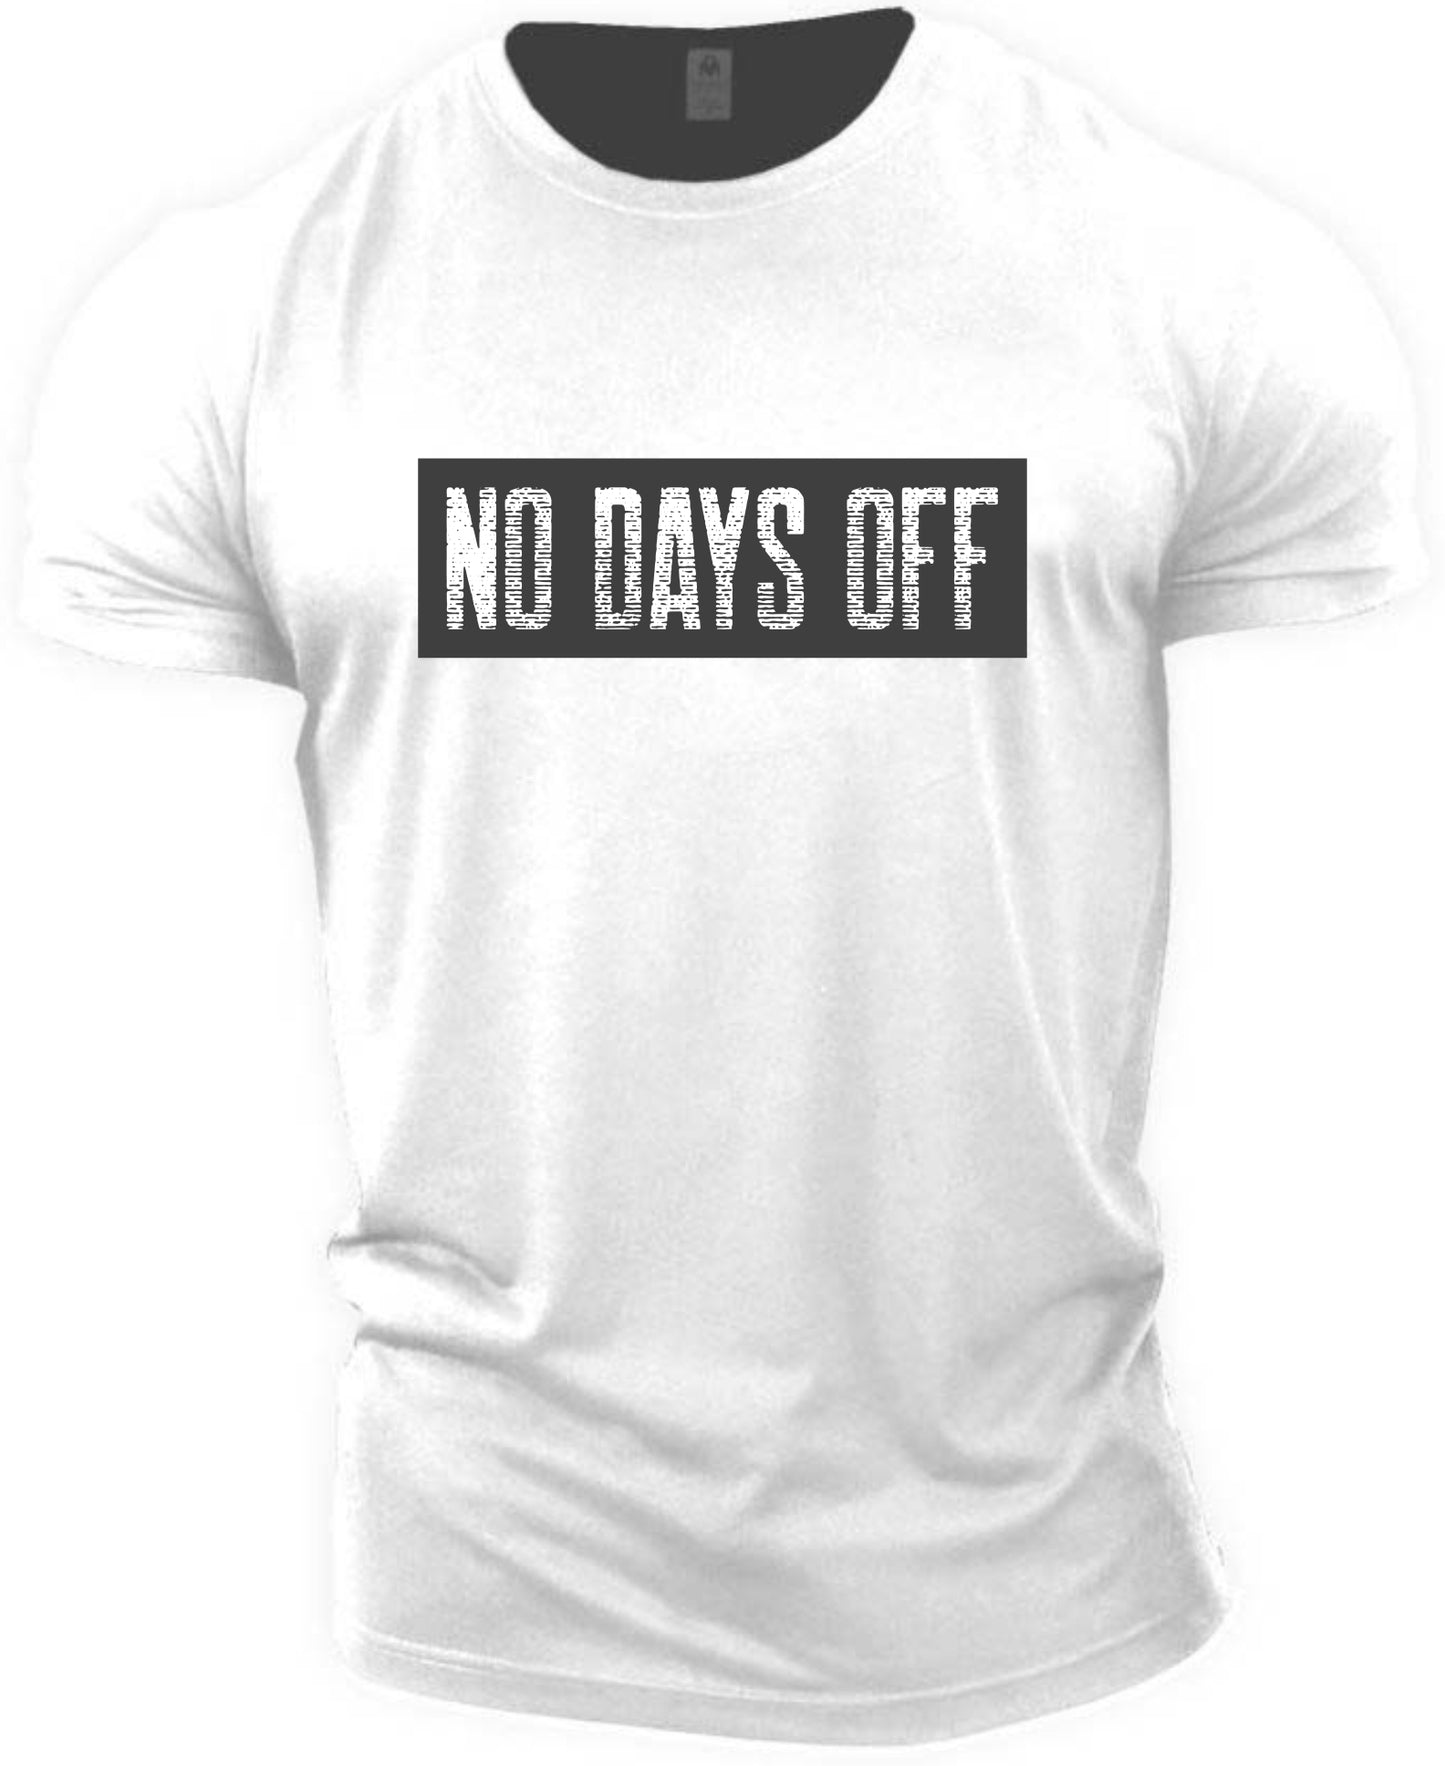 No Days Off T-shirt (Fitness T-shirt)